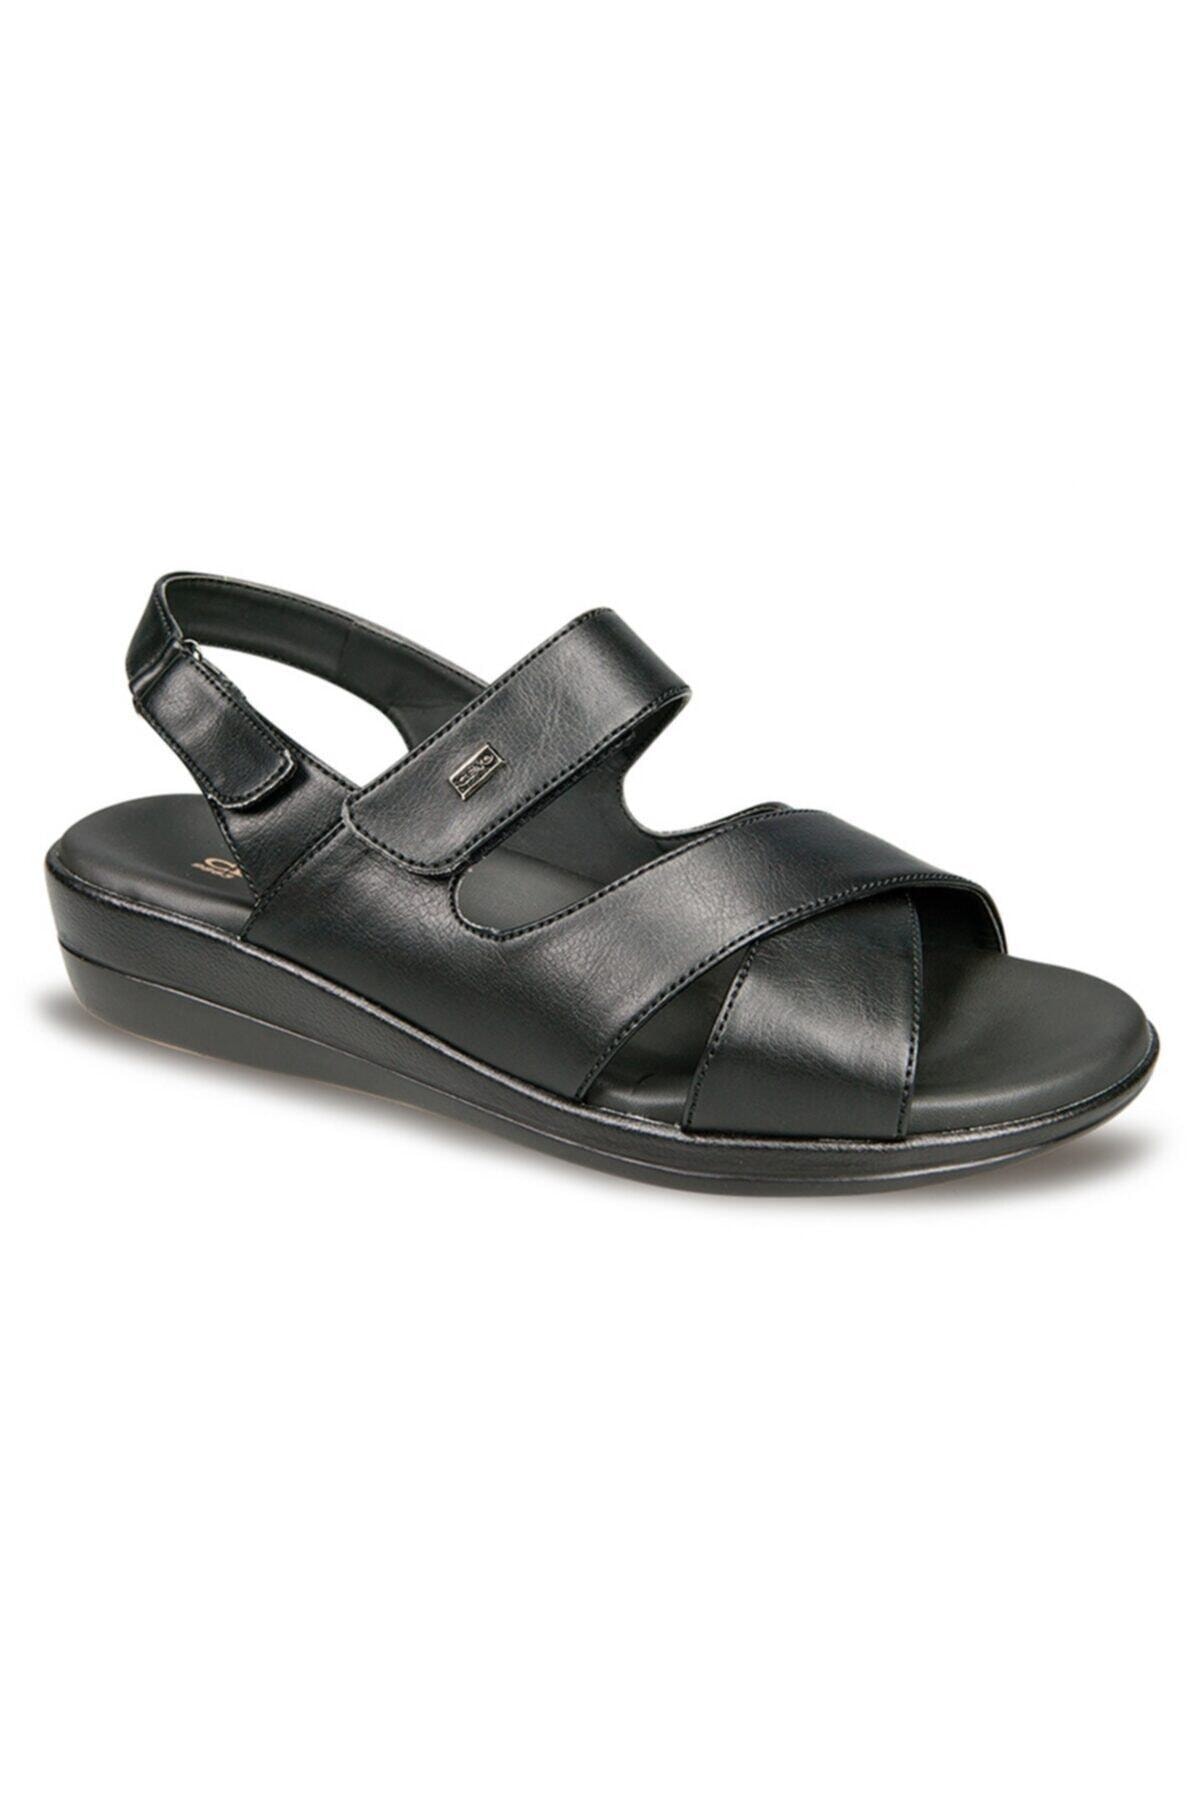 Ceyo Bayan 9863-12 Kadın Siyah Sandalet